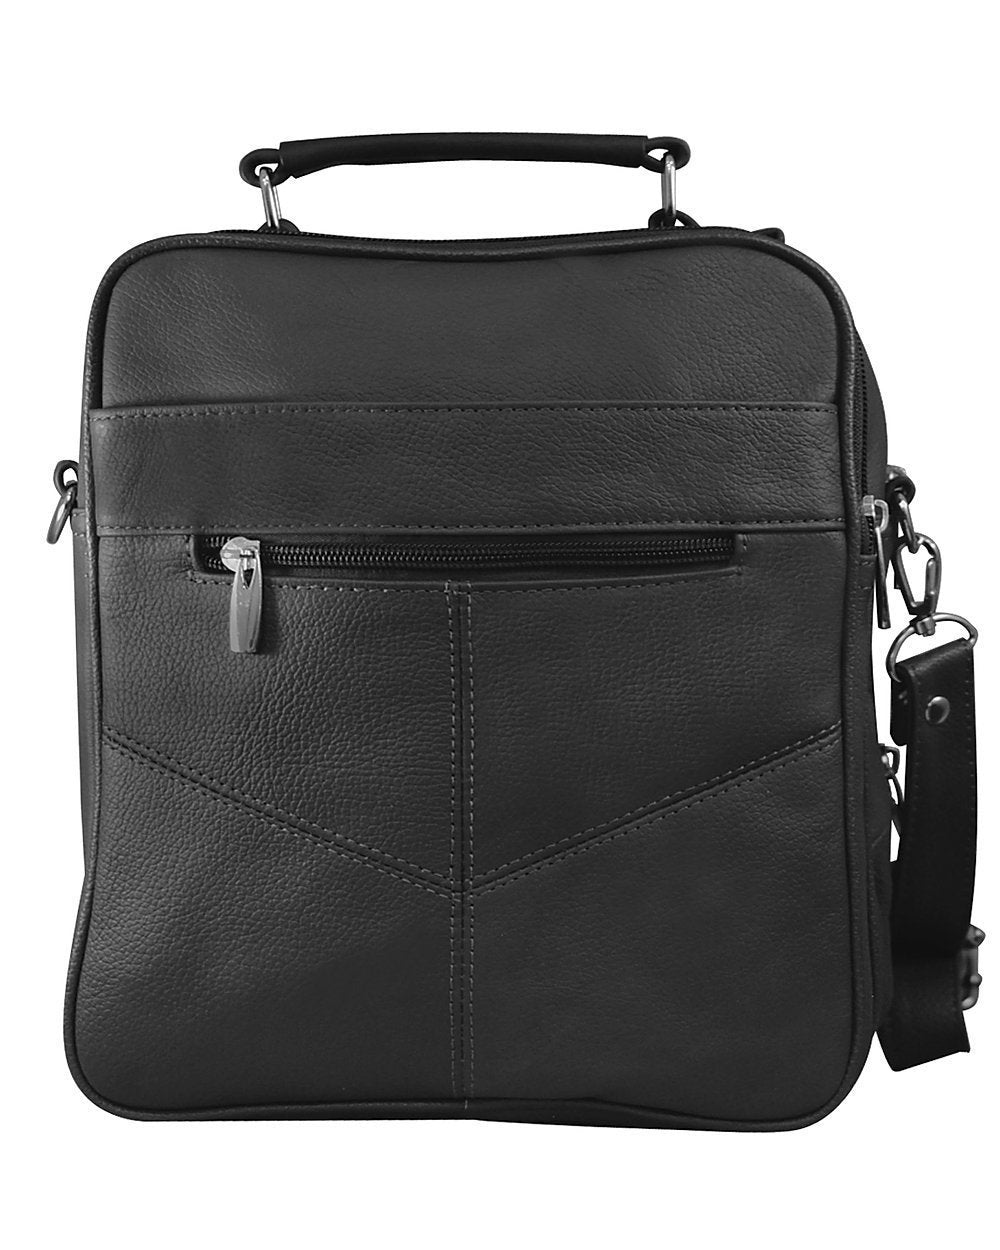 Men's Leather Crossbody Messenger Shoulder Bag Briefcase Satchel Handbag Tablet Bottle Holder